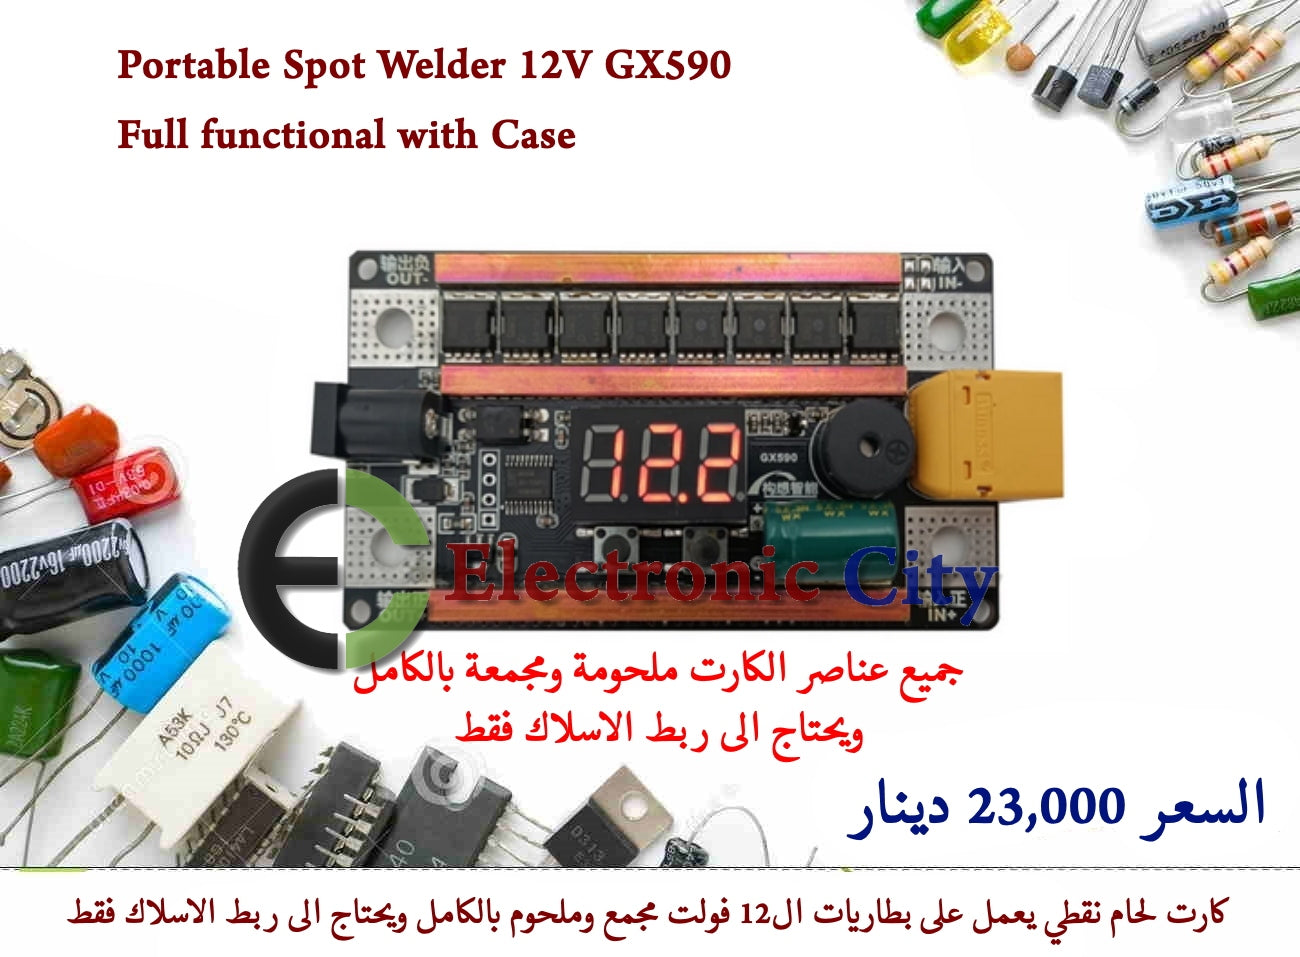 Portable Spot Welder 12V GX590 Full functional with Case